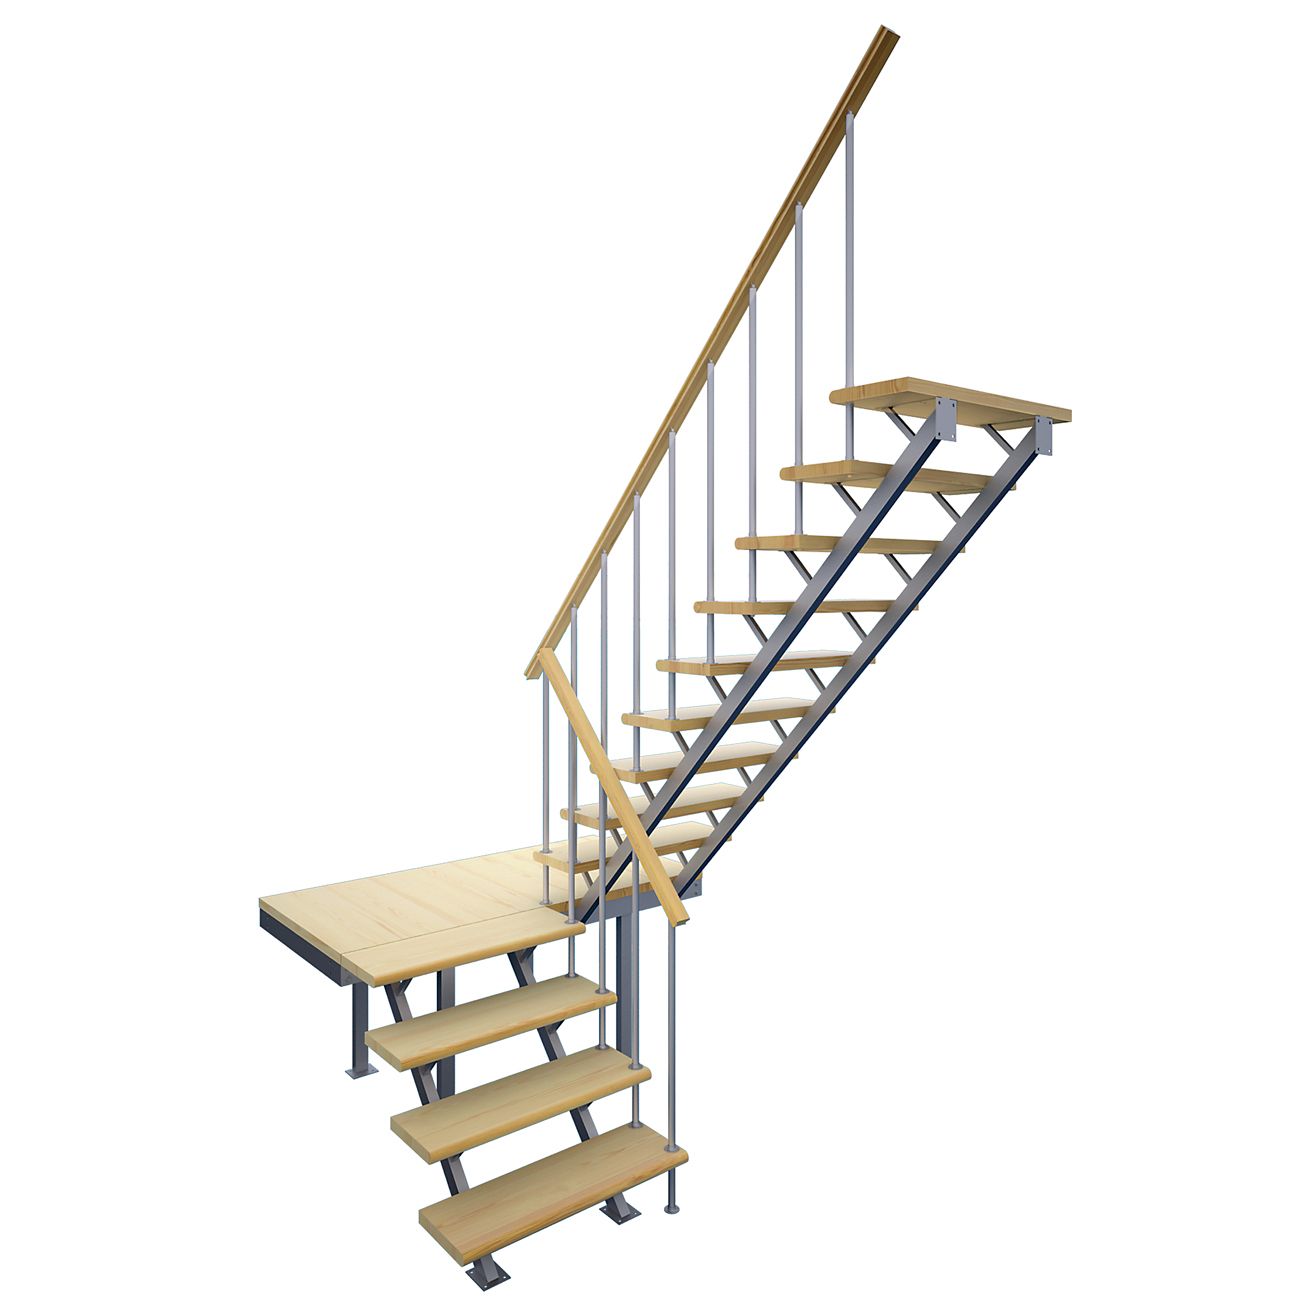 Купить недорогую готовую лестницу. Комбинированная межэтажная лестница лес-06. Лестница межэтажная Леруа Мерлен. Лестница межэтажная лес 715. Модульная лестница спринт (c поворотом на 180 градусов).